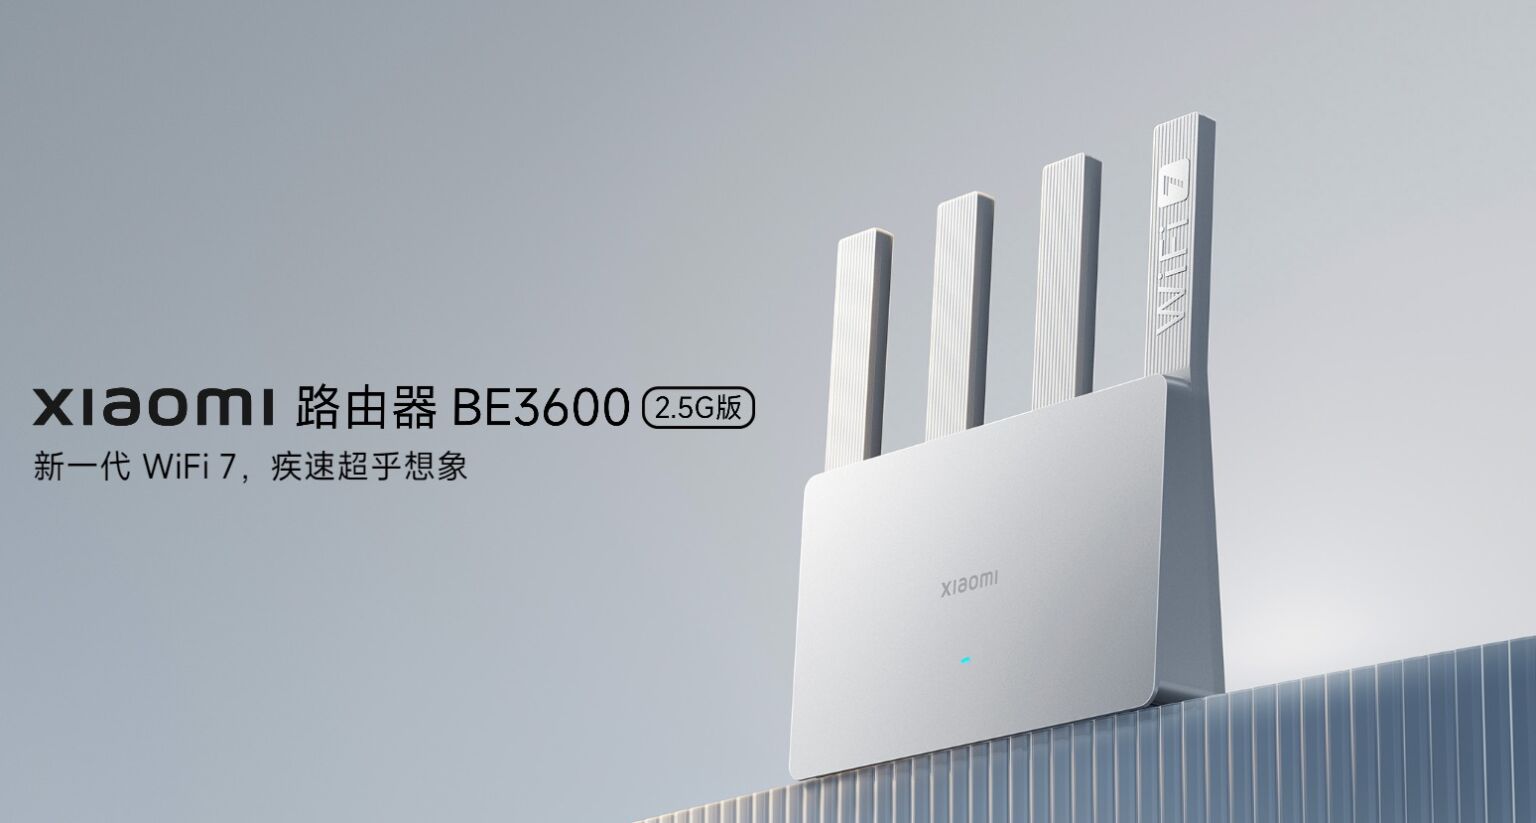 Enrutador Xiaomi BE3600 2.5G